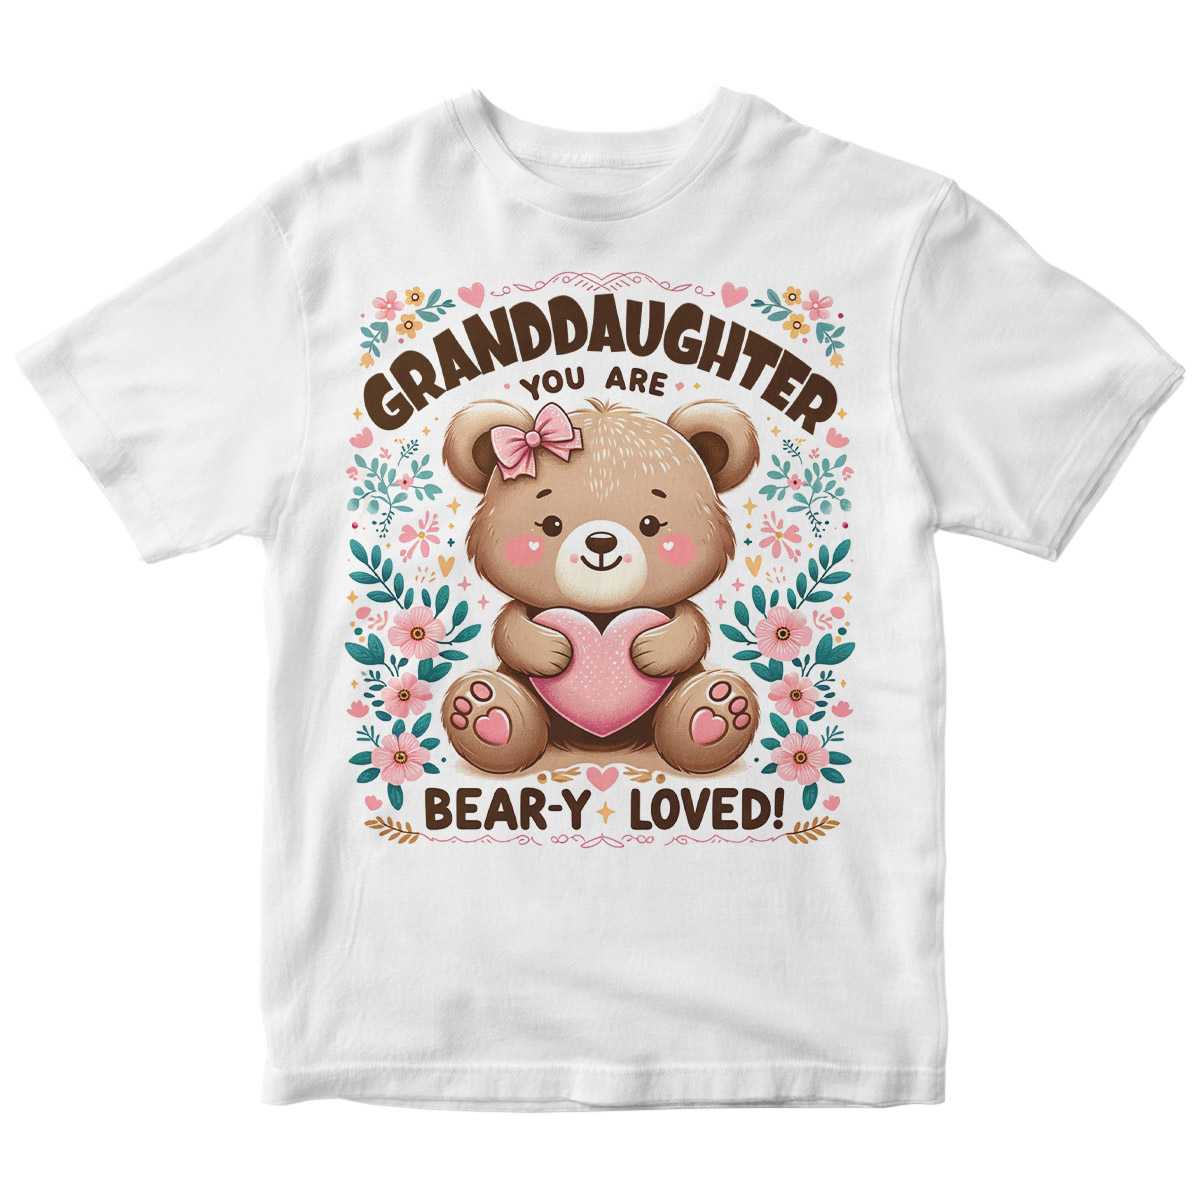 Bear-y Cherished Granddaughter Tee